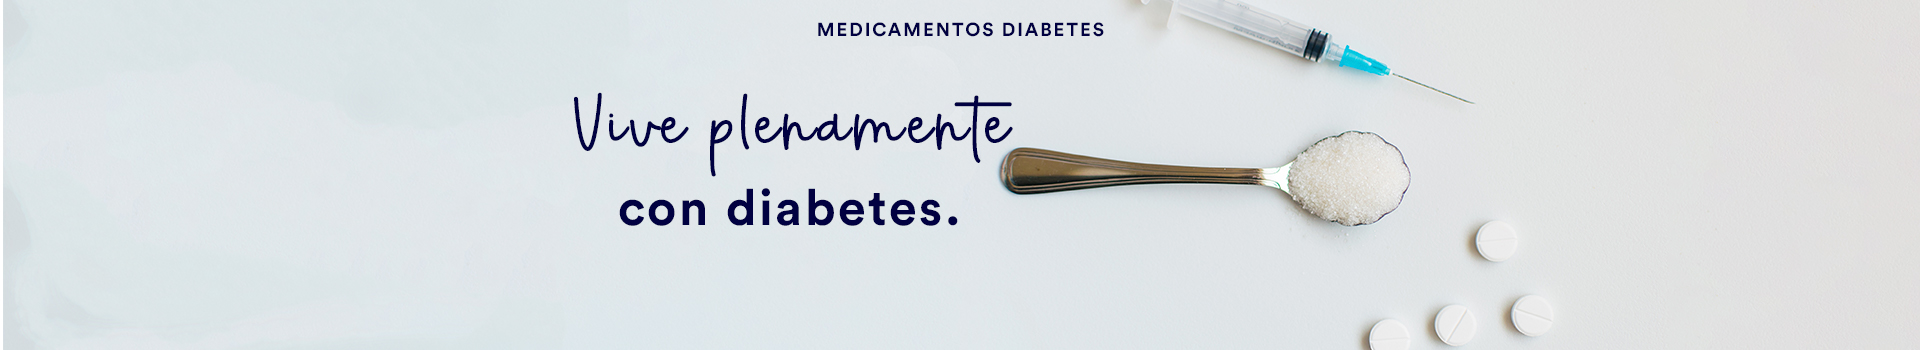 Medicamentos diabetes